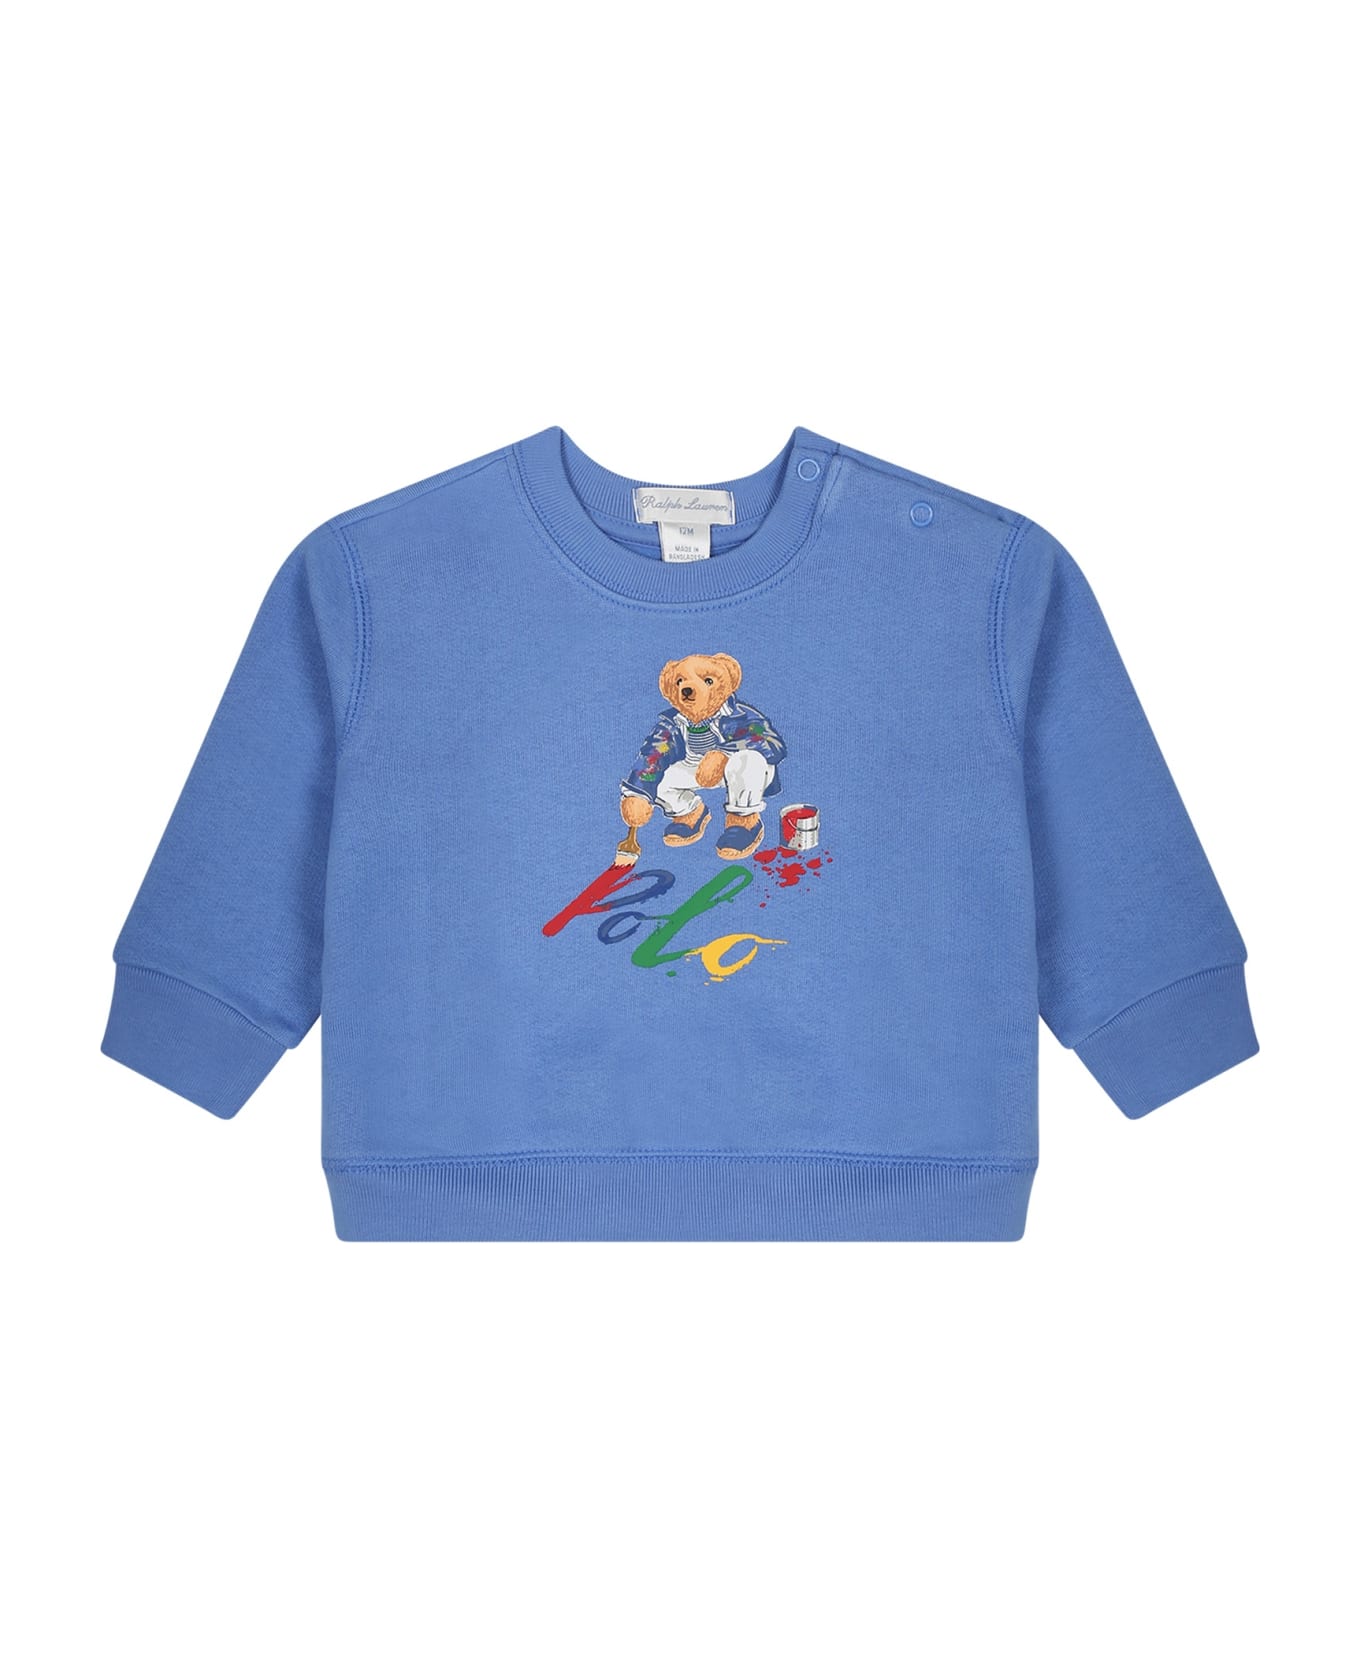 Ralph Lauren Light Blue Sweatshirt For Baby Boy With Polo Bear - Light Blue